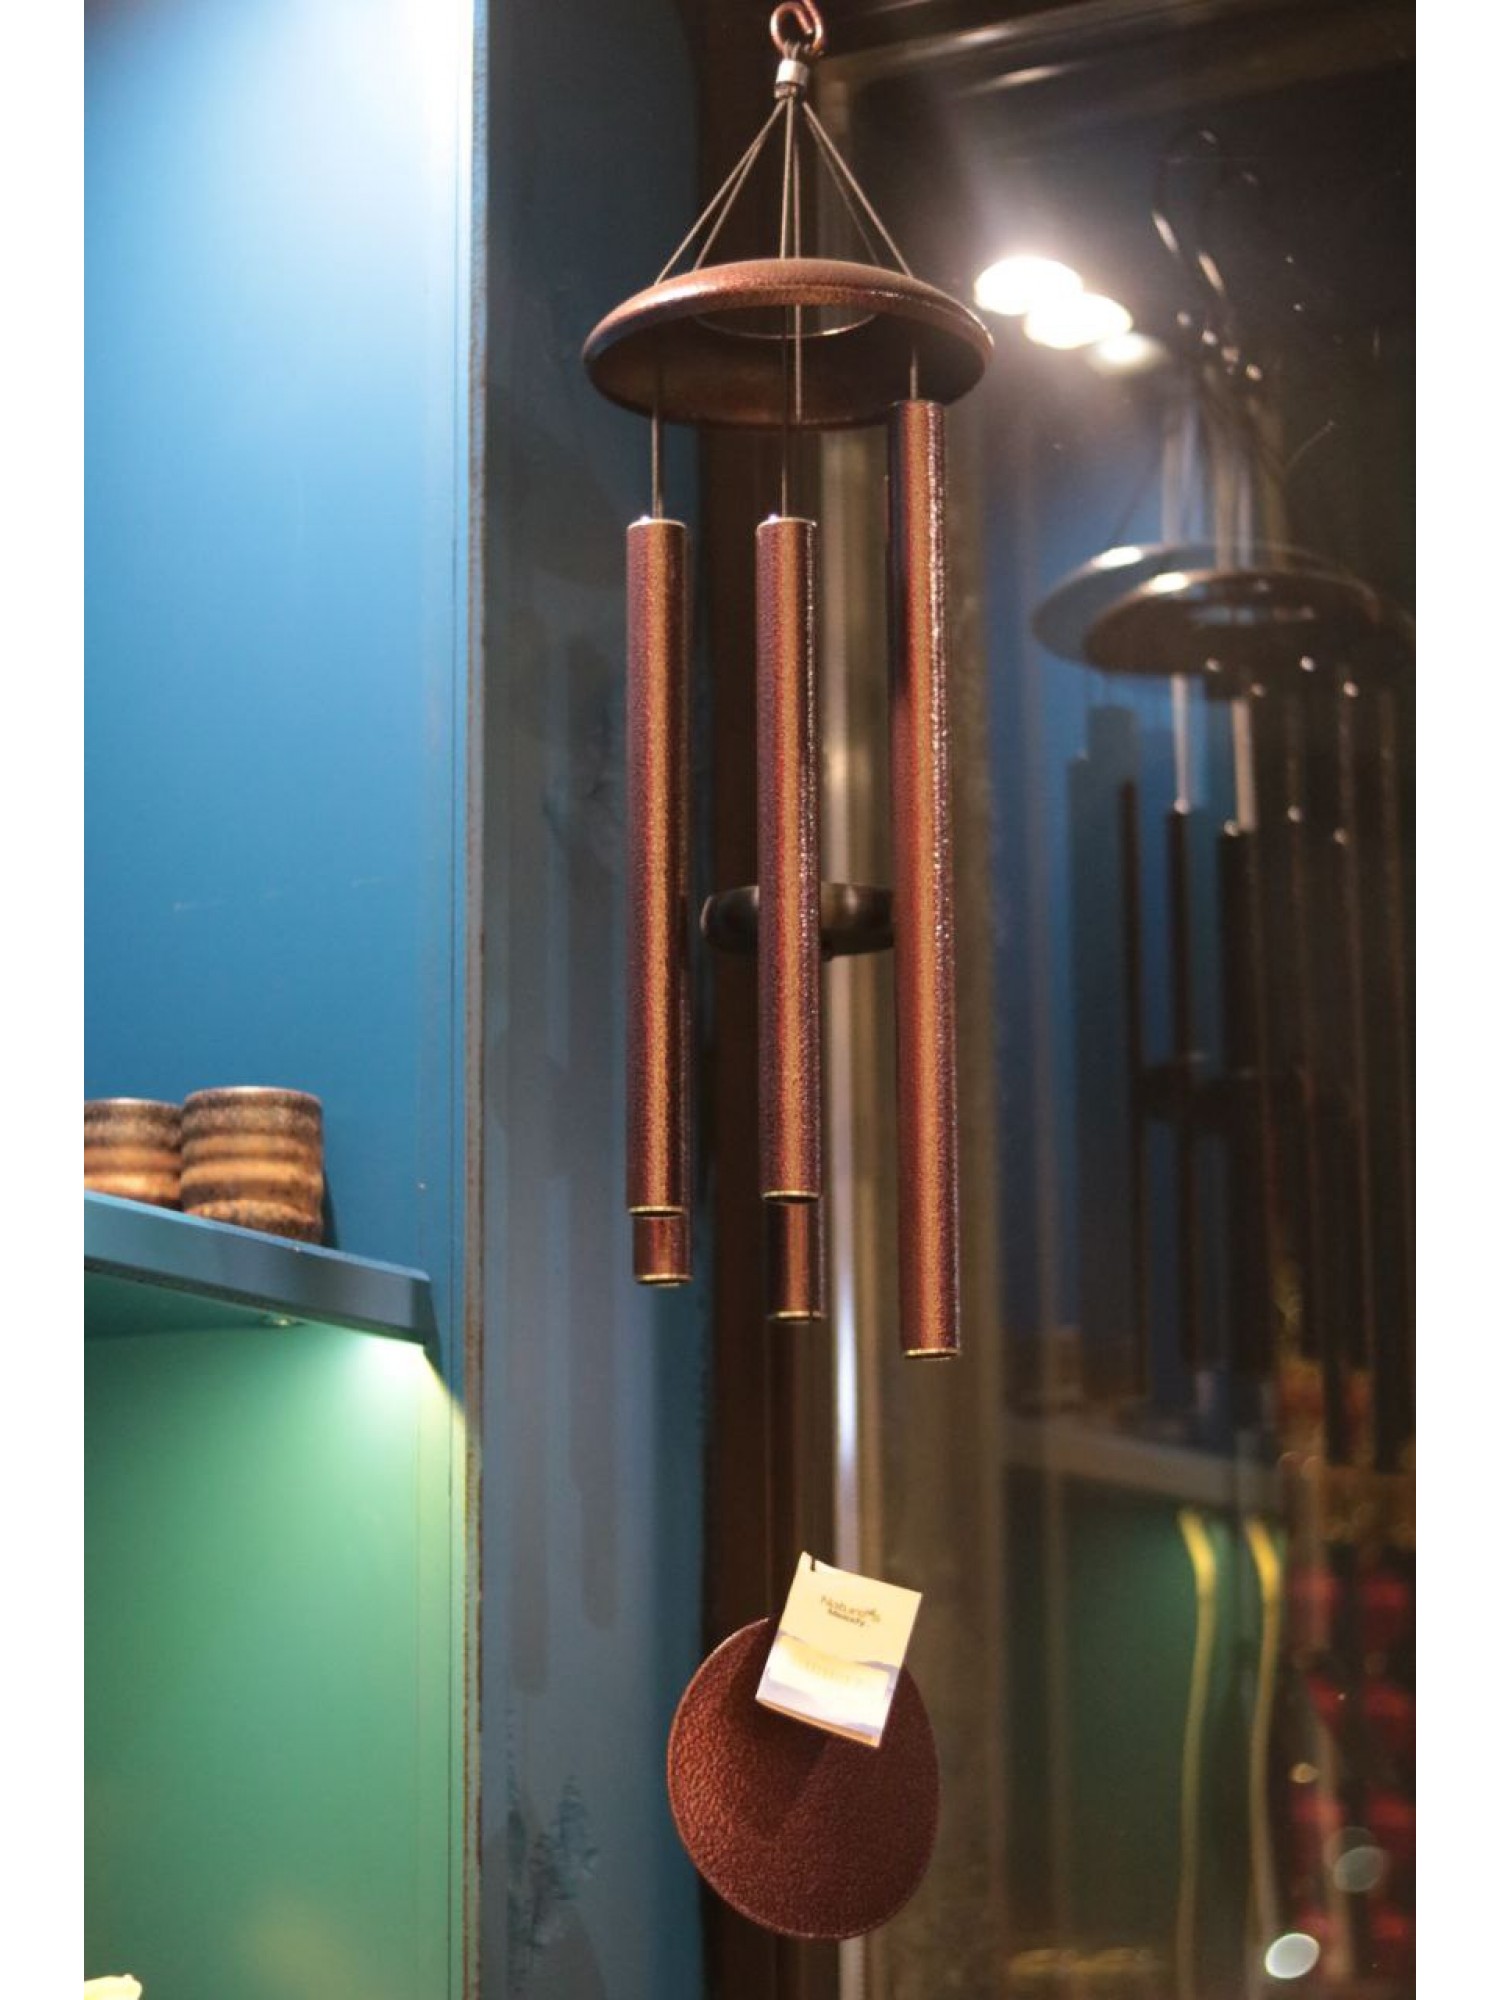 Музыка Ветра "6 трубочек" из металла служит средством для коррекции резкого потока энергии Ци и привлечение энергии удачи в дом